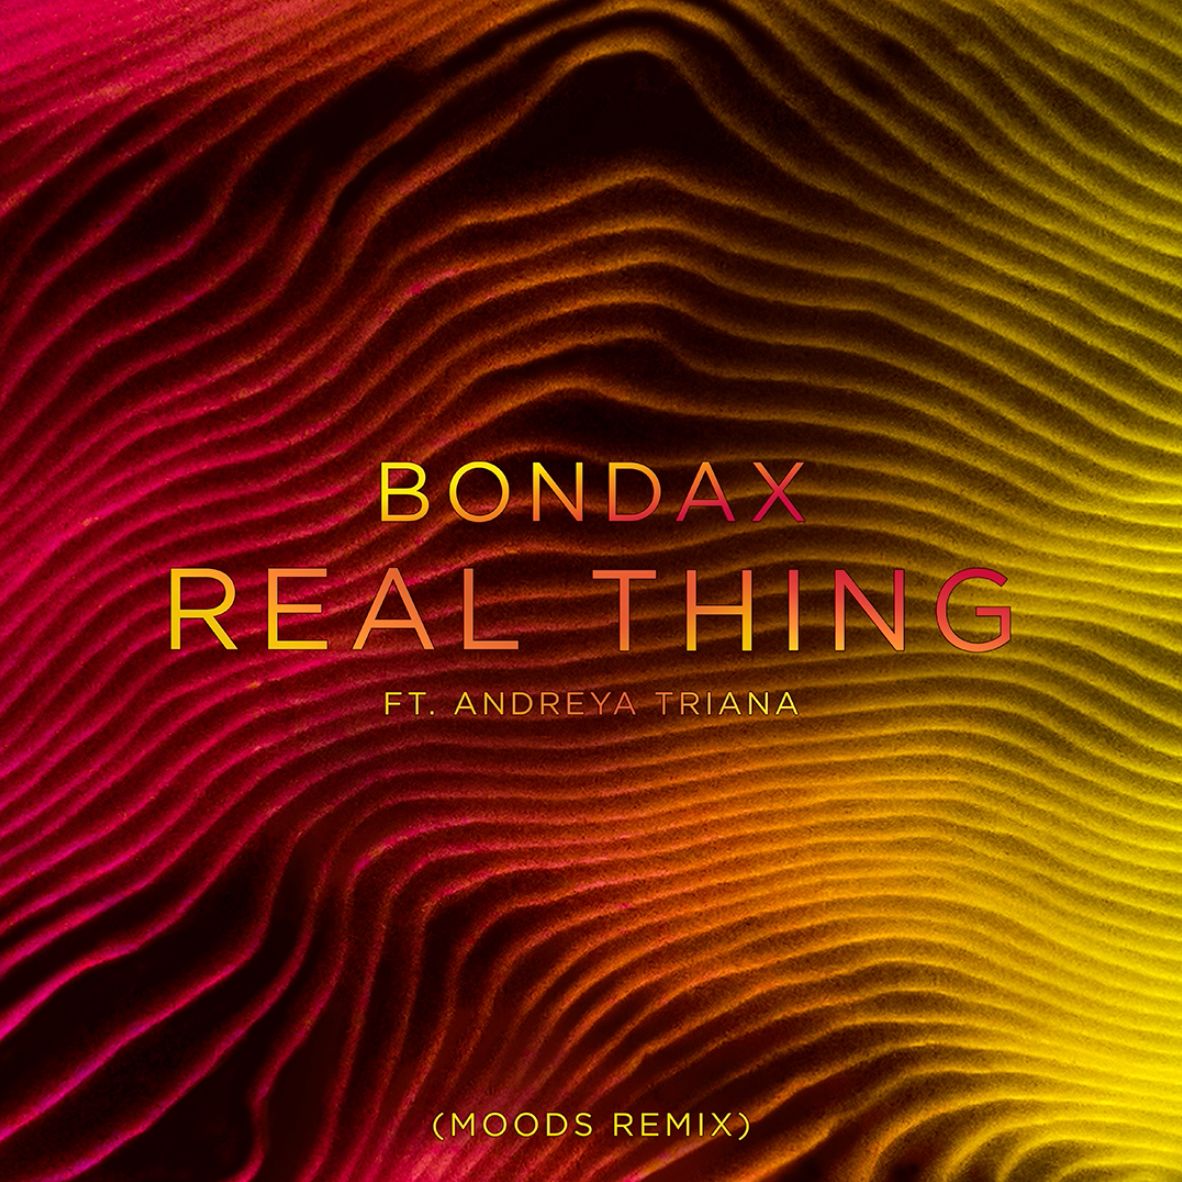 ڈاؤن لوڈ کریں Bondax - Real Thing ft. Andreya Triana (Moods Remix)